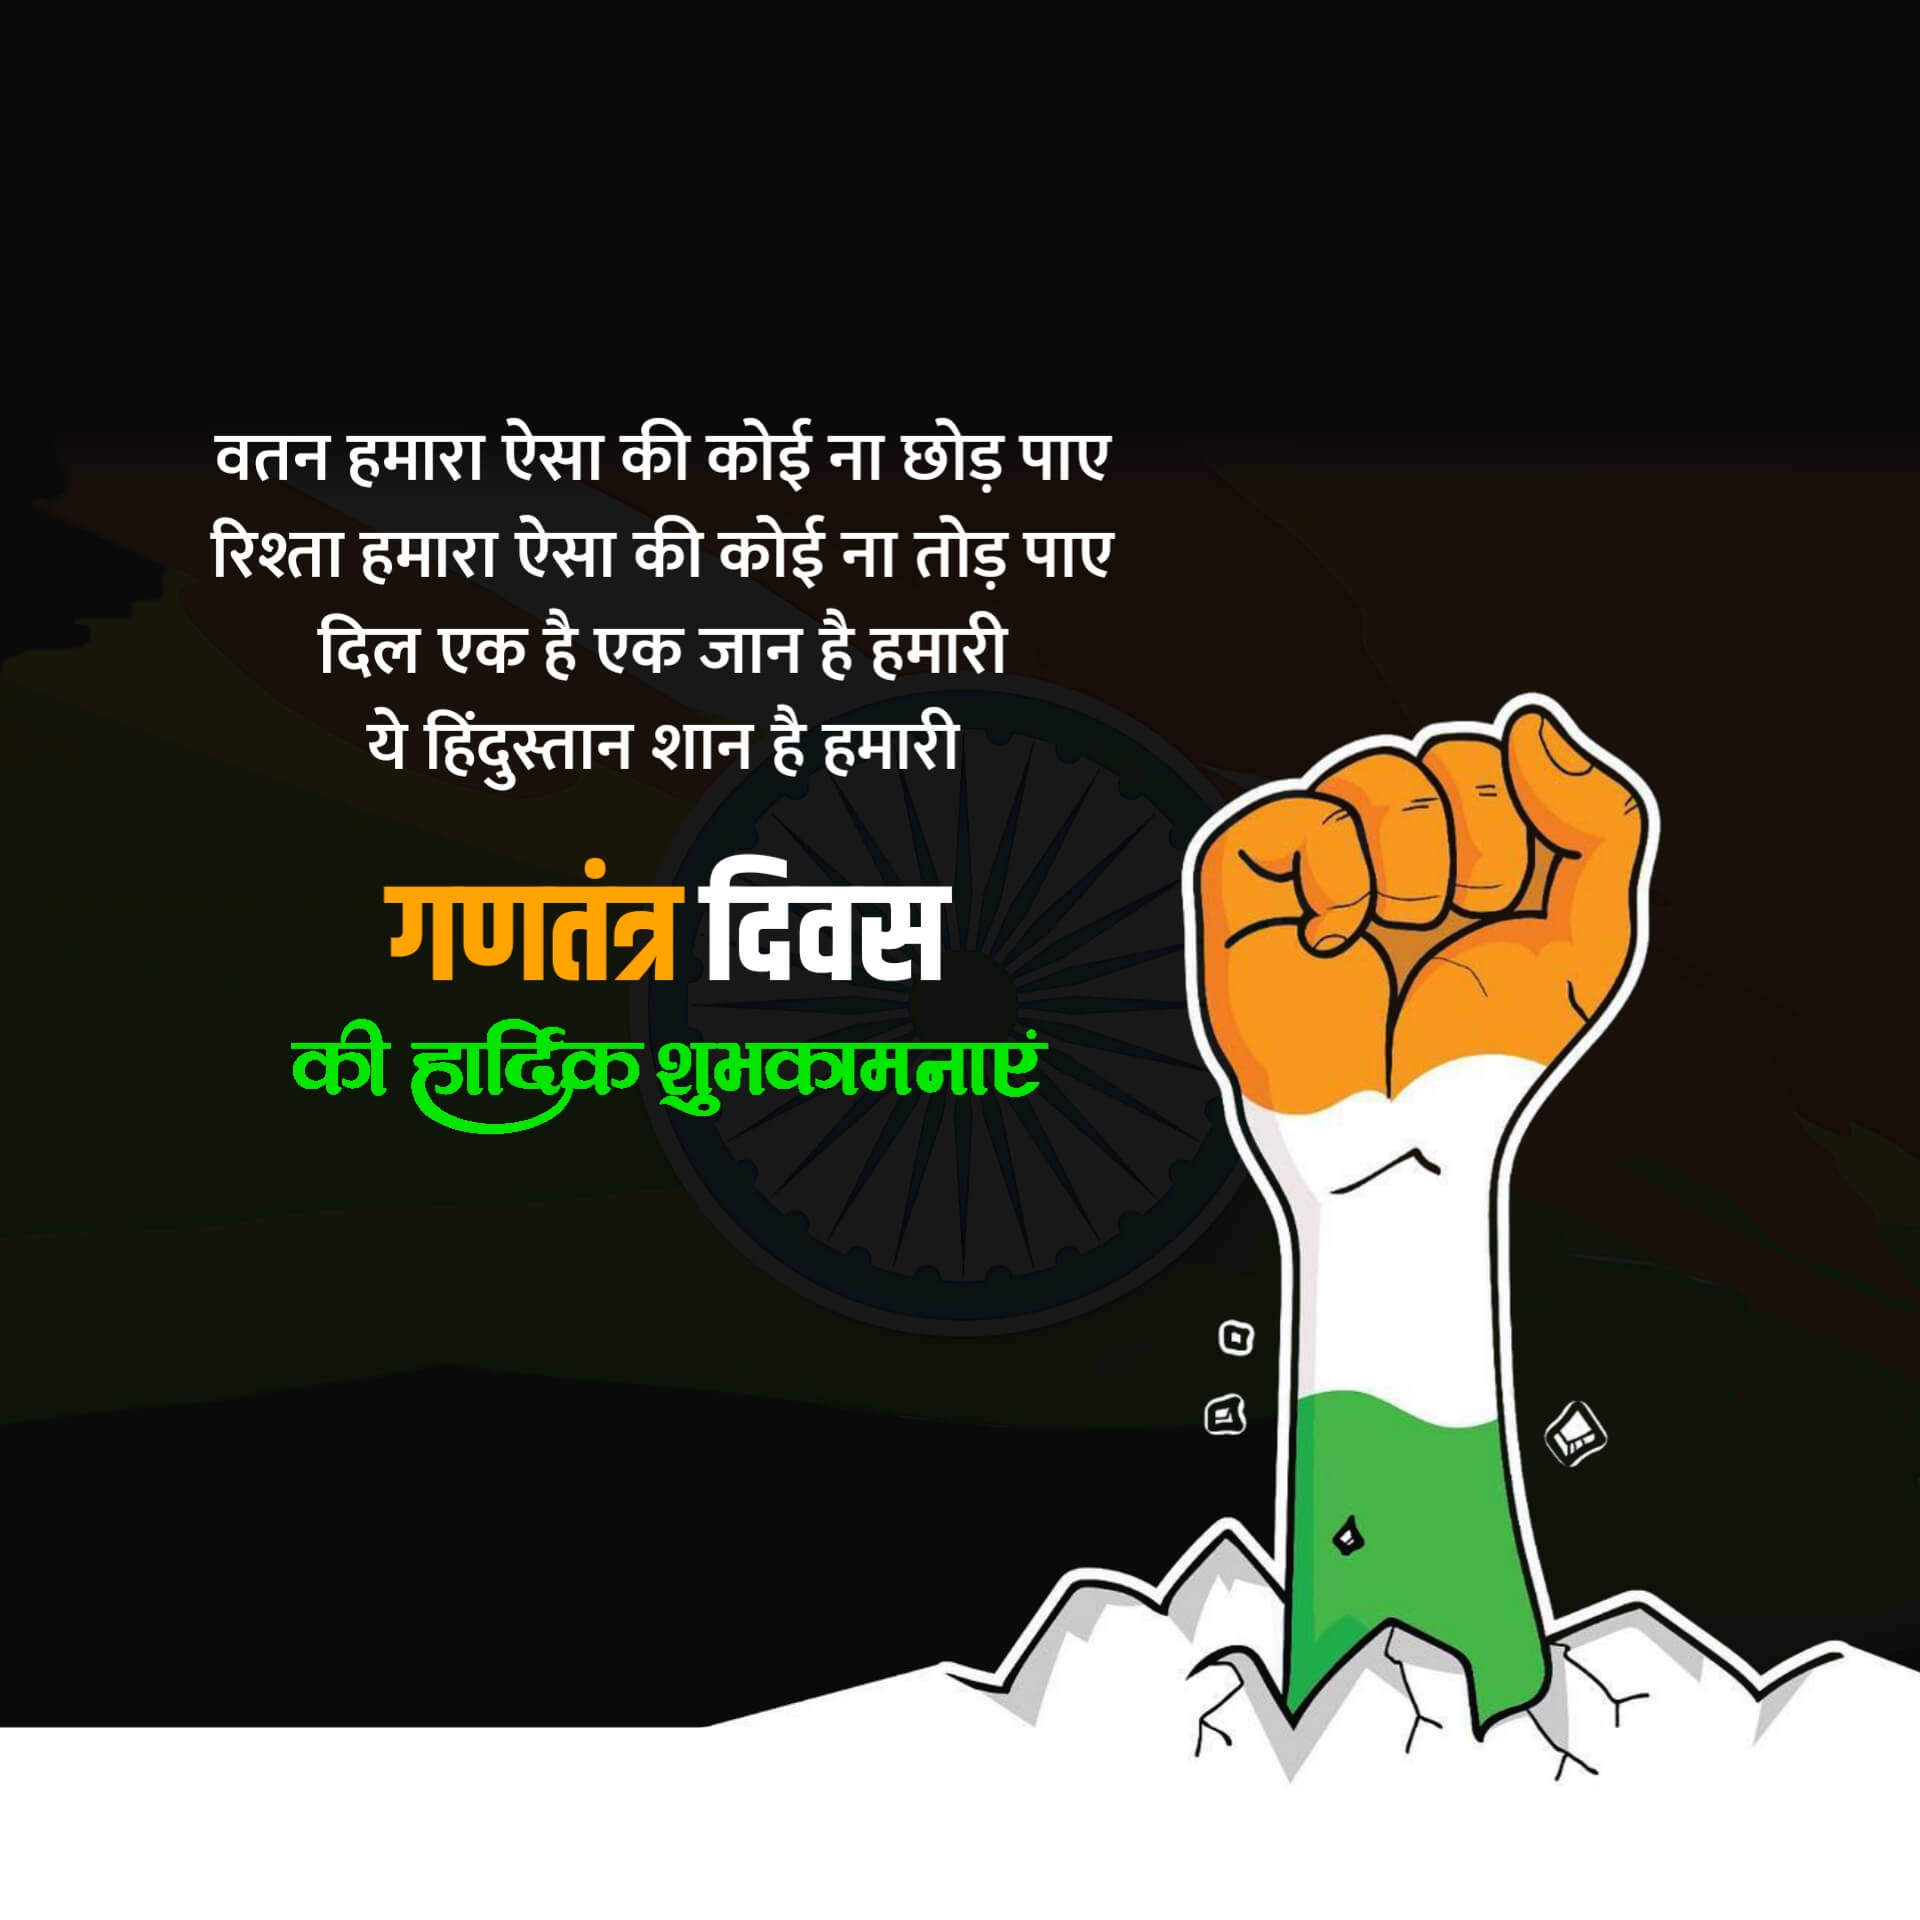 Hindi Republic Day Picture